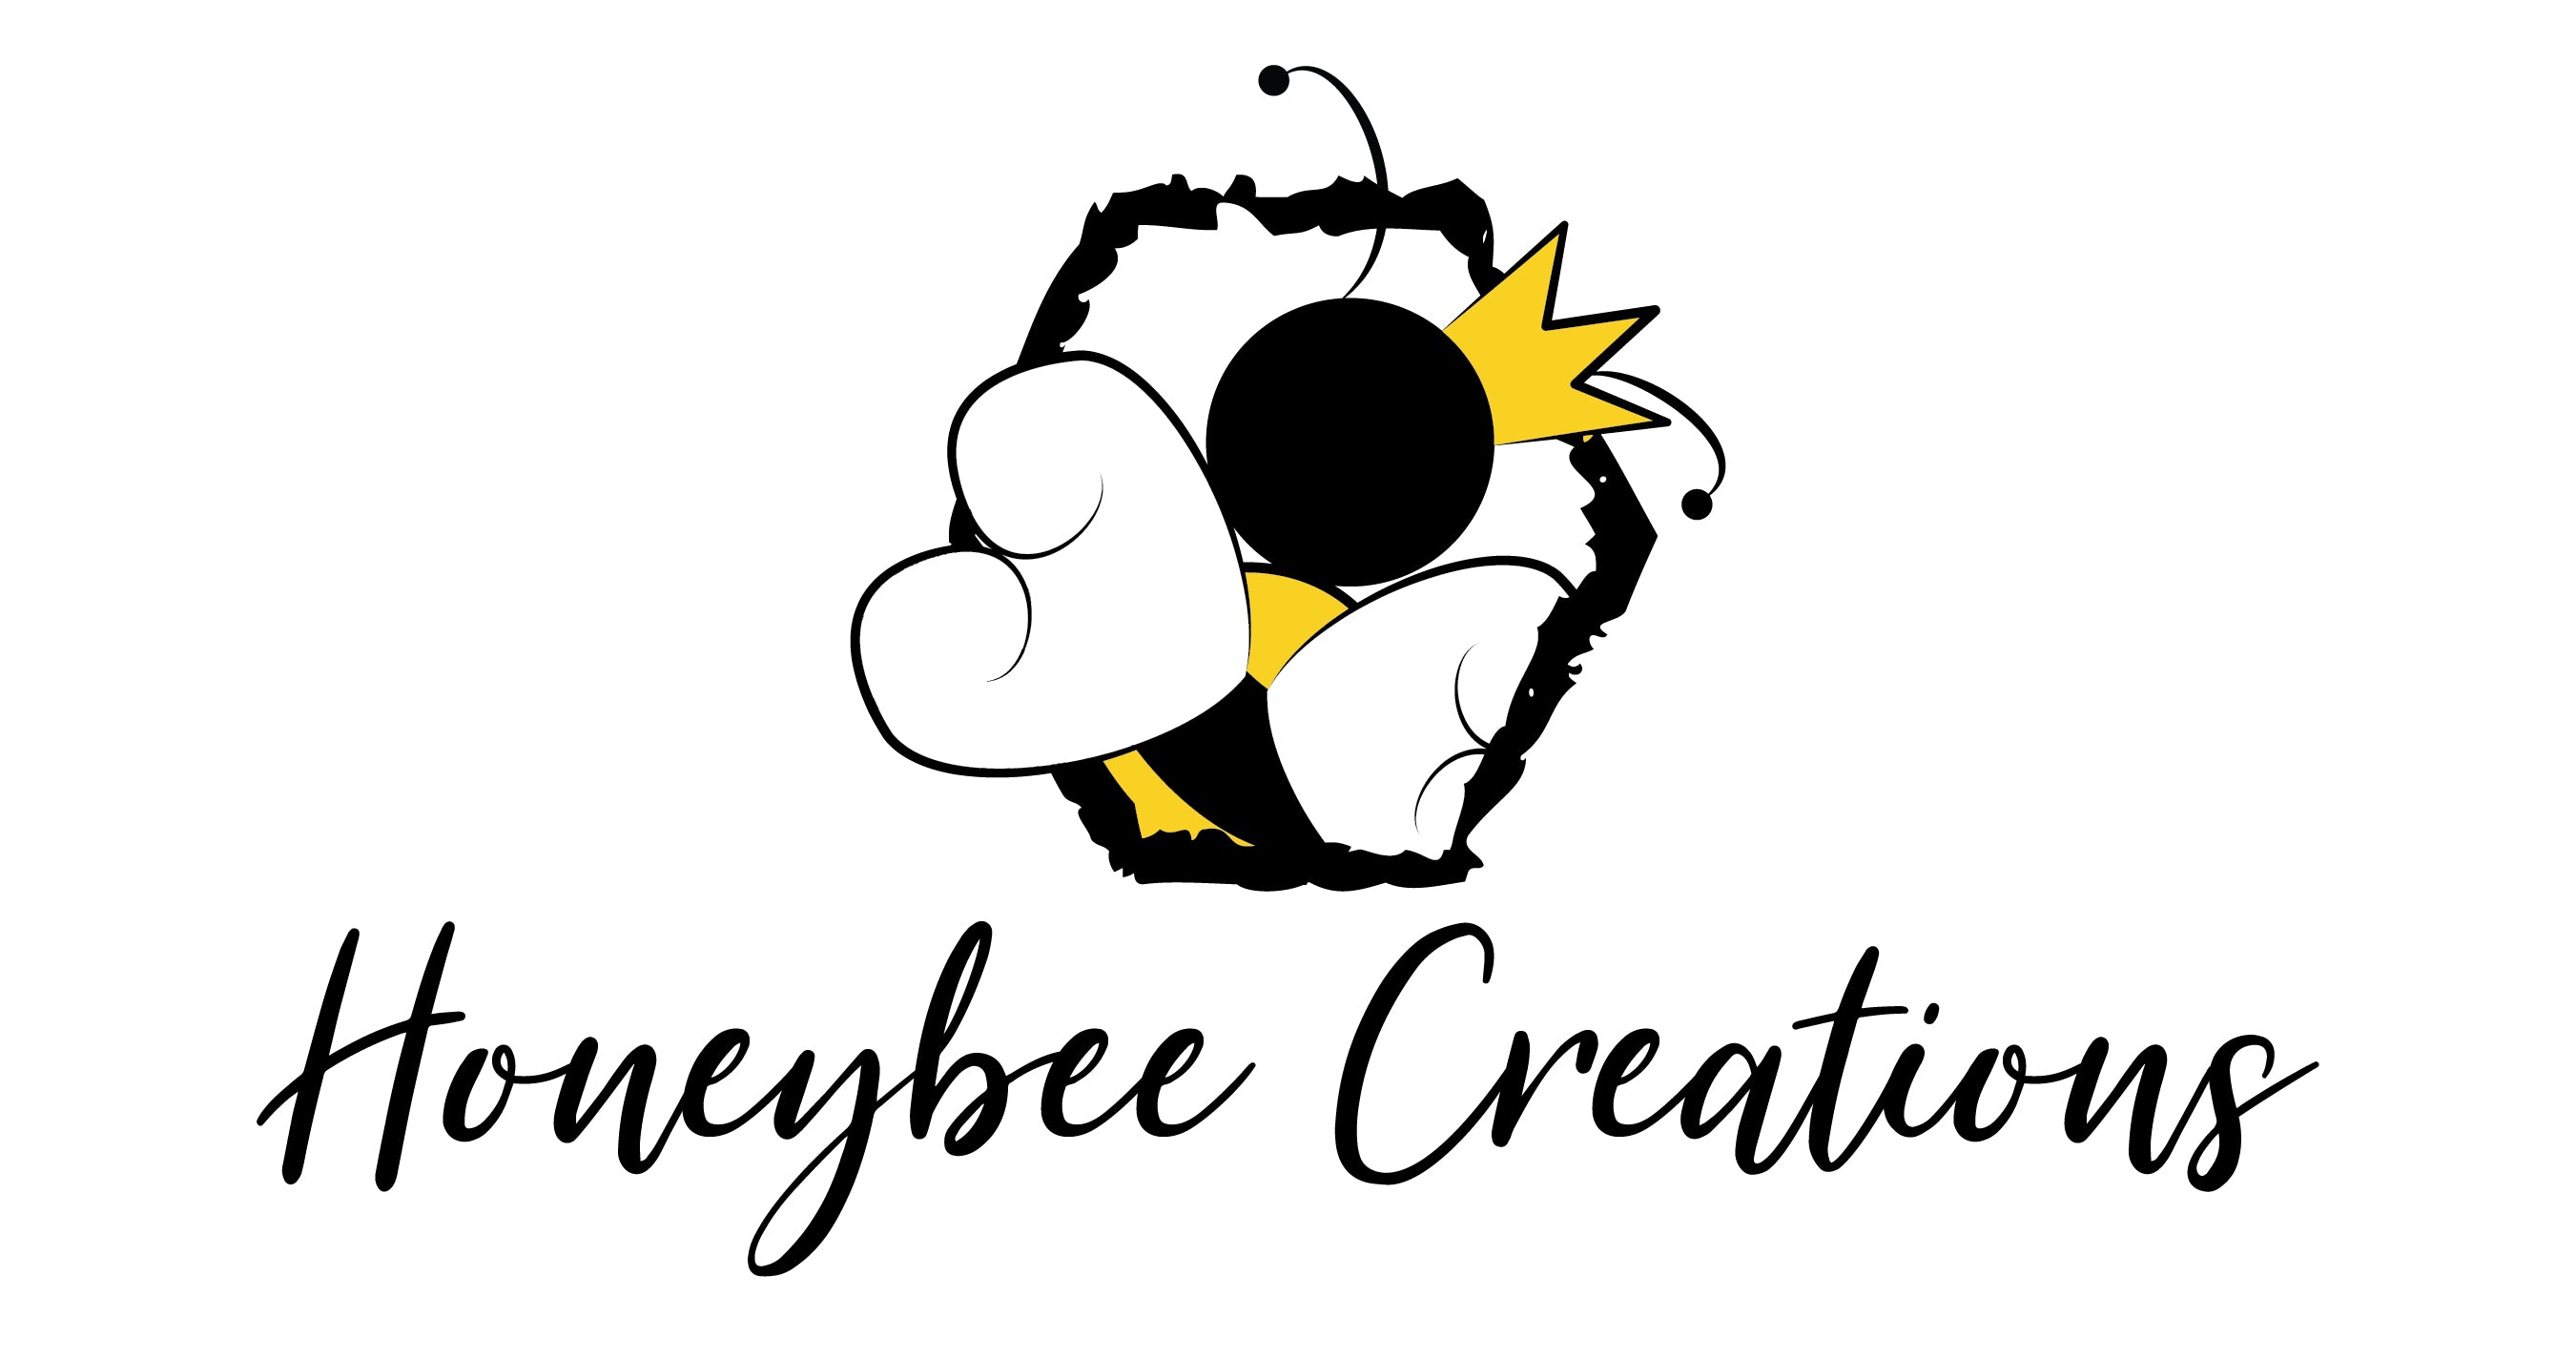 Cartoon queen bee in hexagon with "Honeybee Creations" under it.